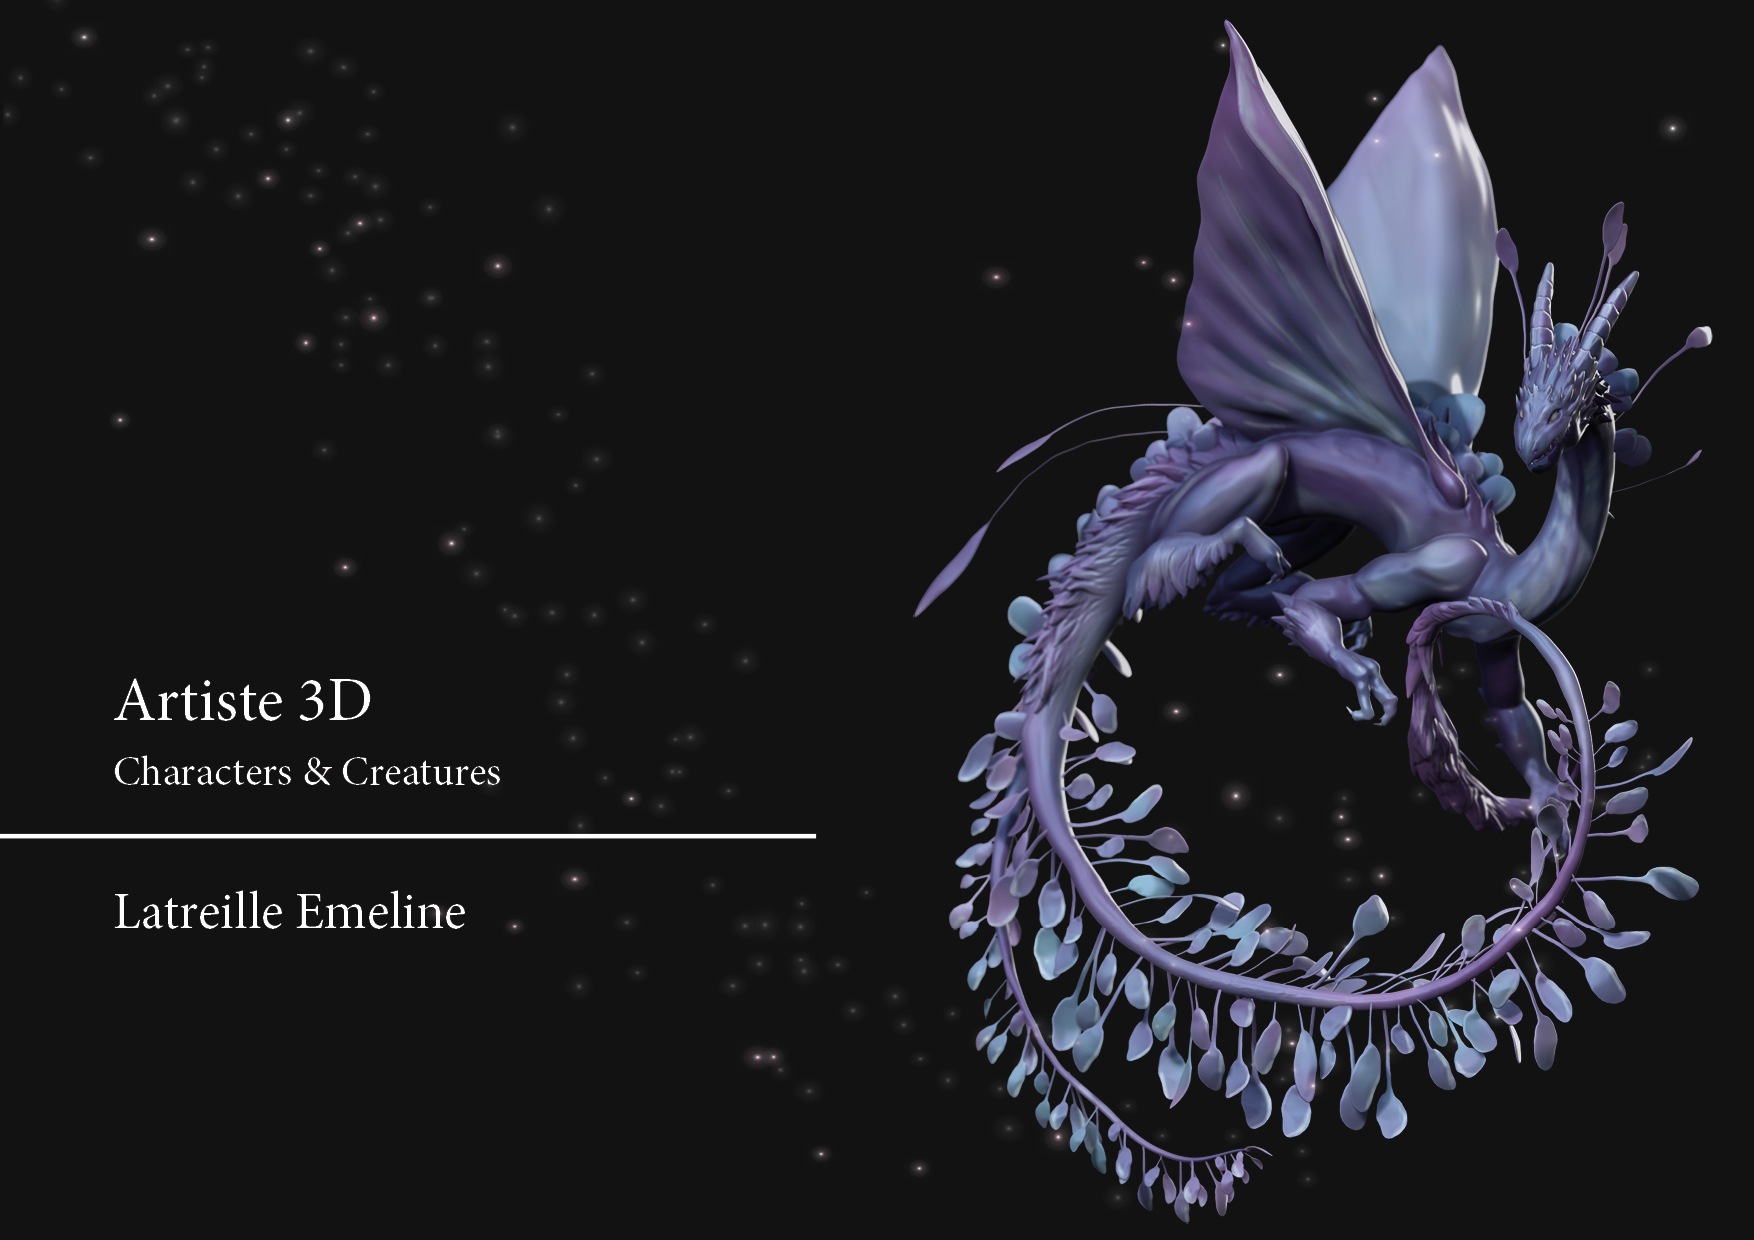 Artiste 3D

Characters & Creatures

Latreille Emeline